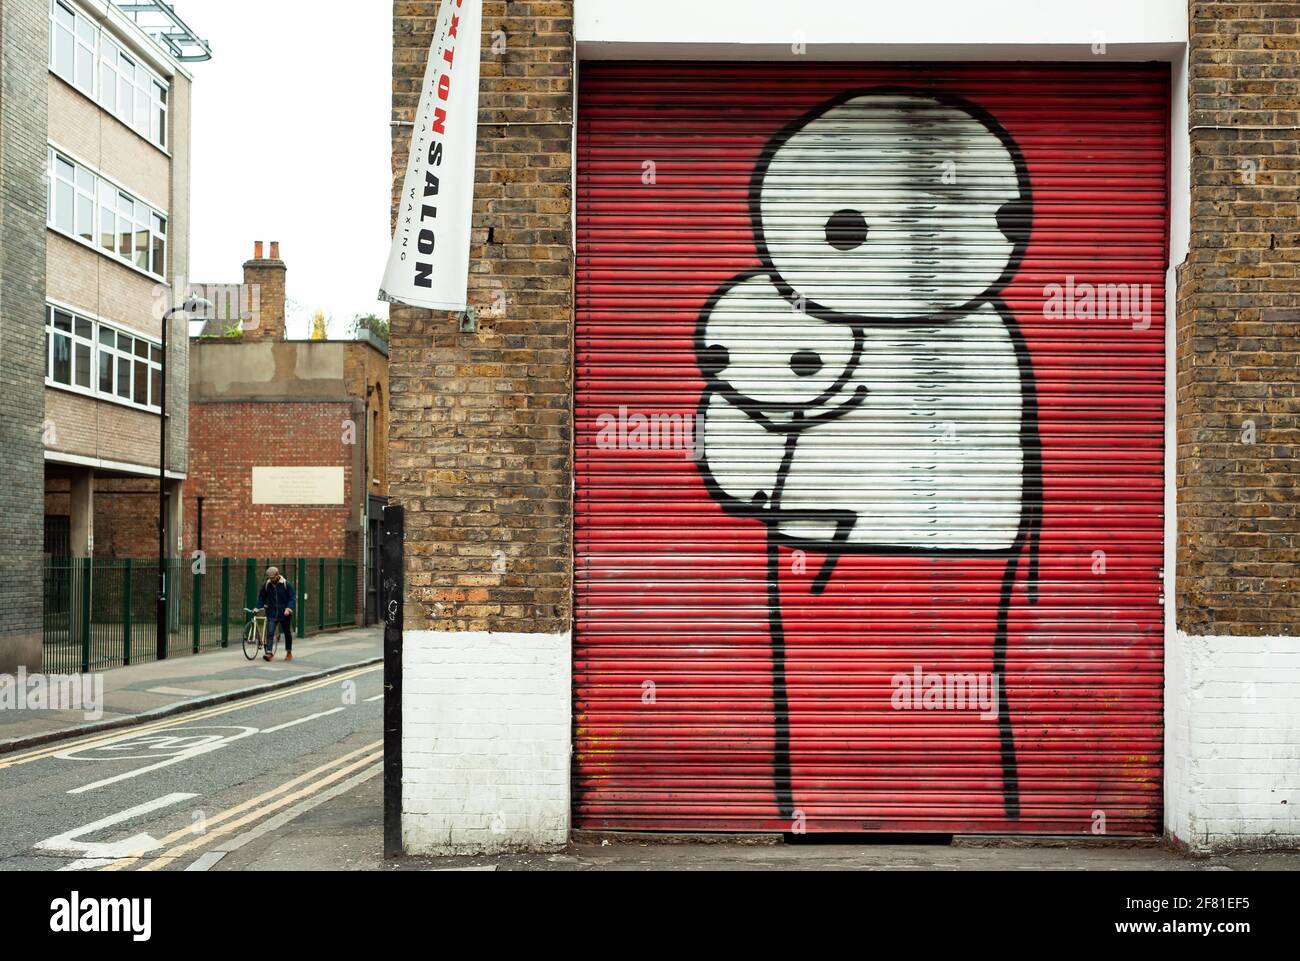 Obra de STIK (artista británico de graffiti con sede en Londres). Grandes figuras de palo en persianas pintadas. Este de Londres, Reino Unido. Abr 2013 Foto de stock